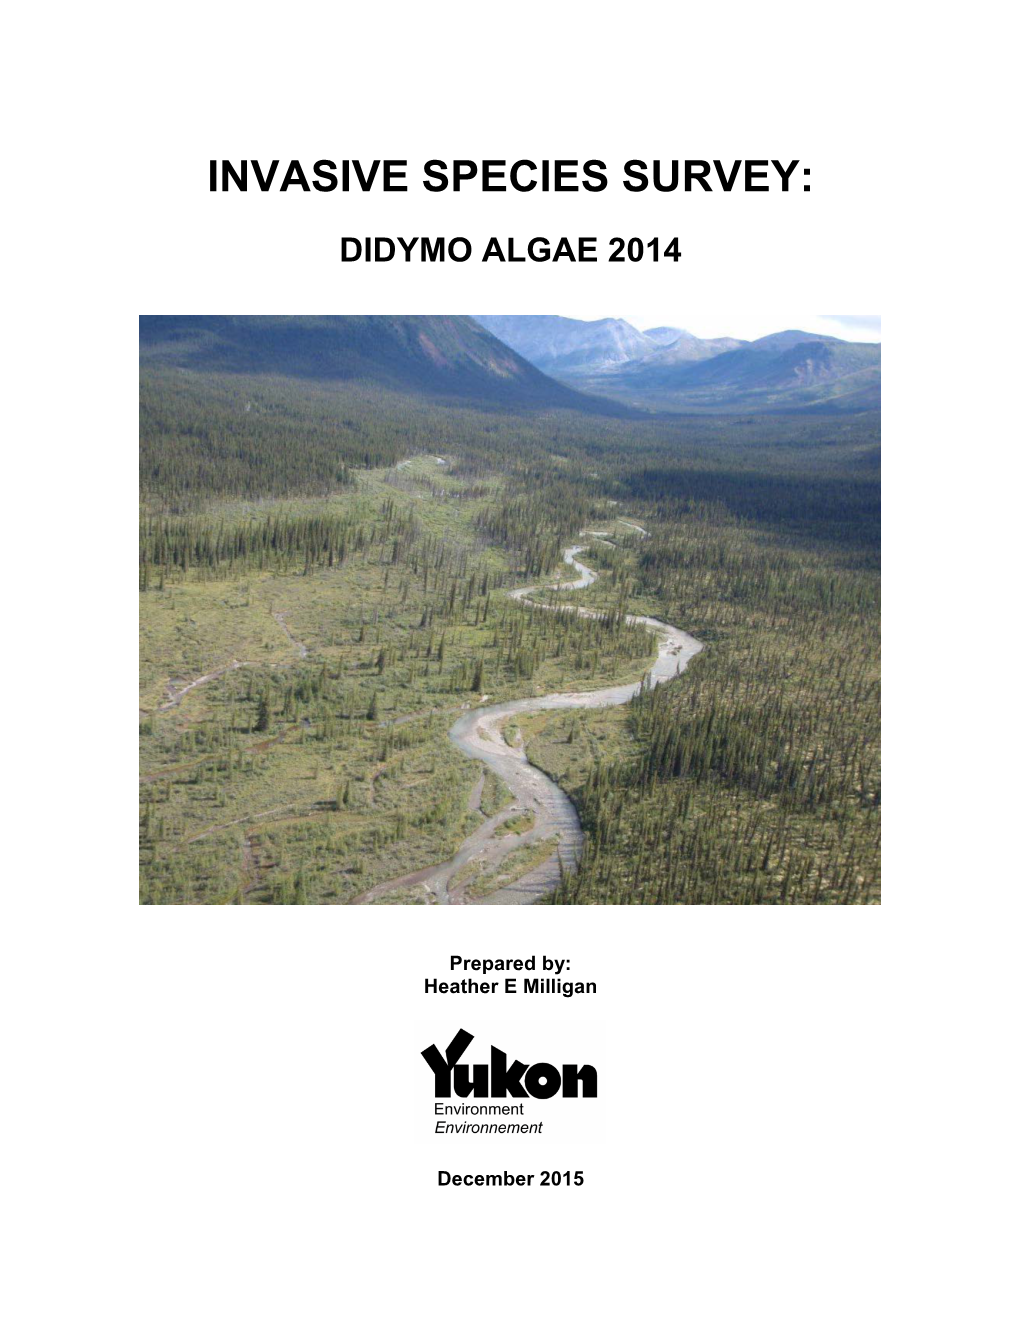 Invasive Species Survey: Didymo Algae 2014